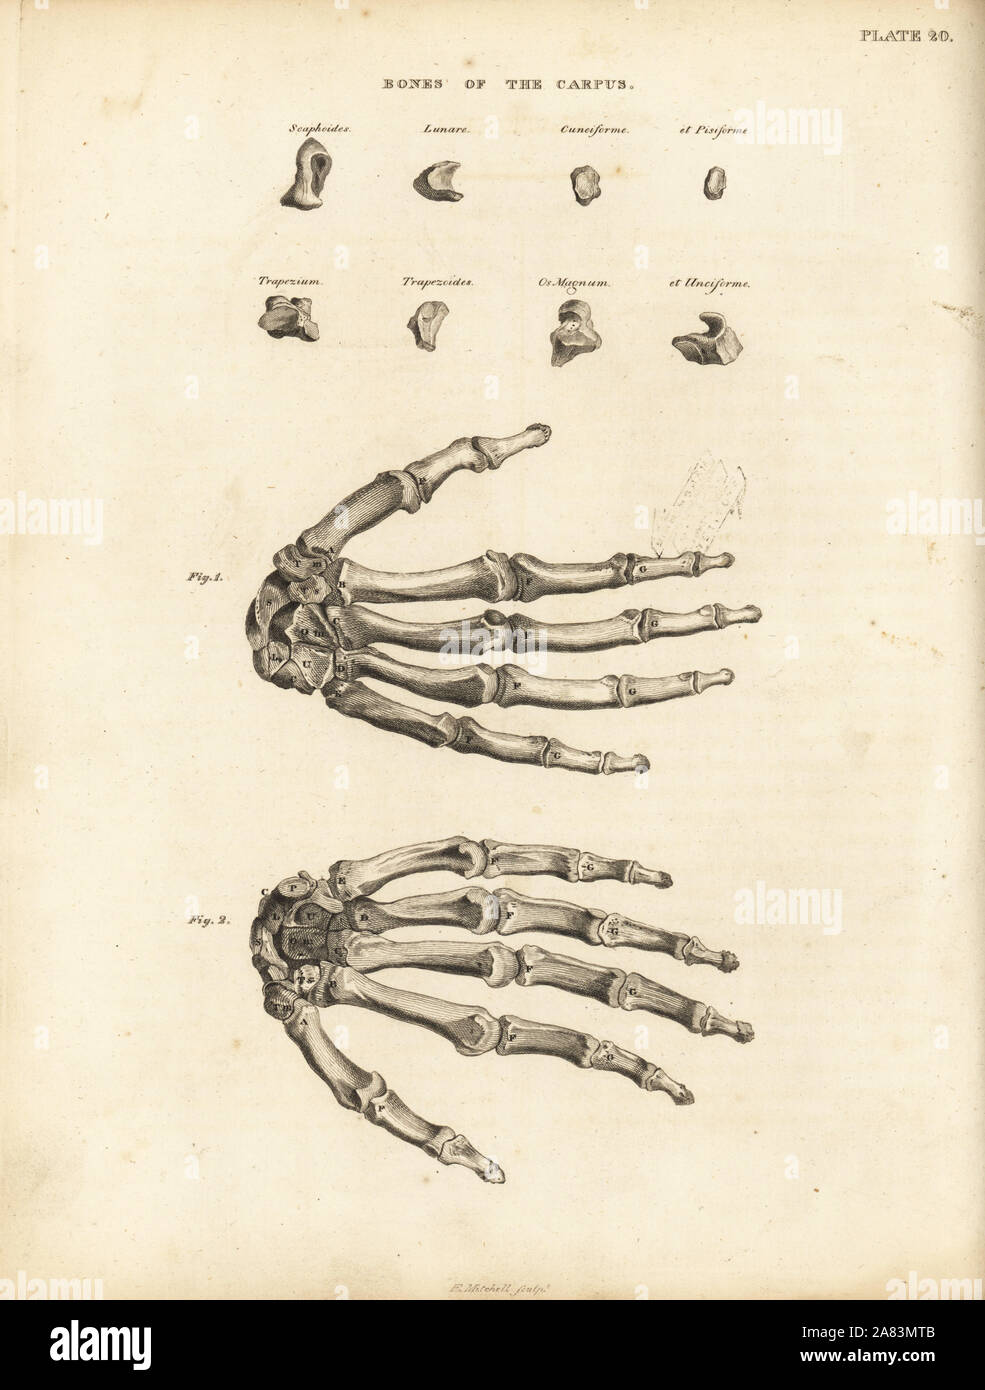 Knochen des Karpus, Mittelhand und Finger in die menschliche Hand. Kupferstich von Edward Mitchell nachdem eine anatomische Abbildung kann von John Barclay's eine Reihe von Stichen des menschlichen Skeletts, MacLachlan und Stewart, Edinburgh, 1824. Stockfoto